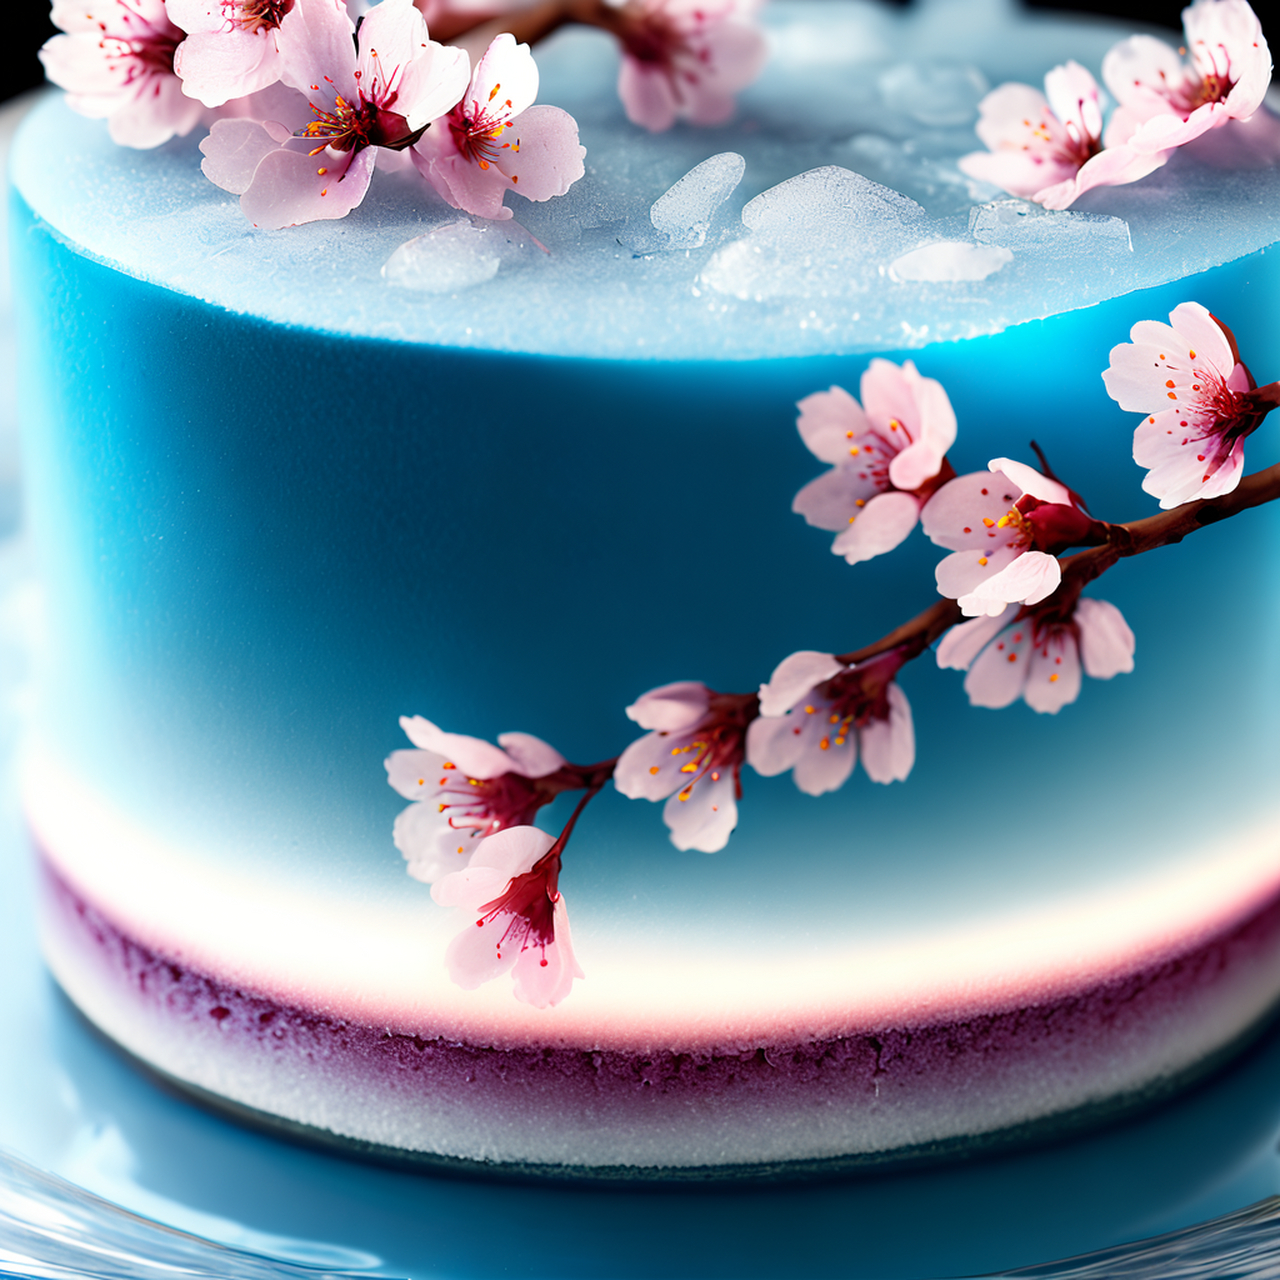 超有意境的冰皮樱花蛋糕,祝福文心一格一周年生日快乐呦!